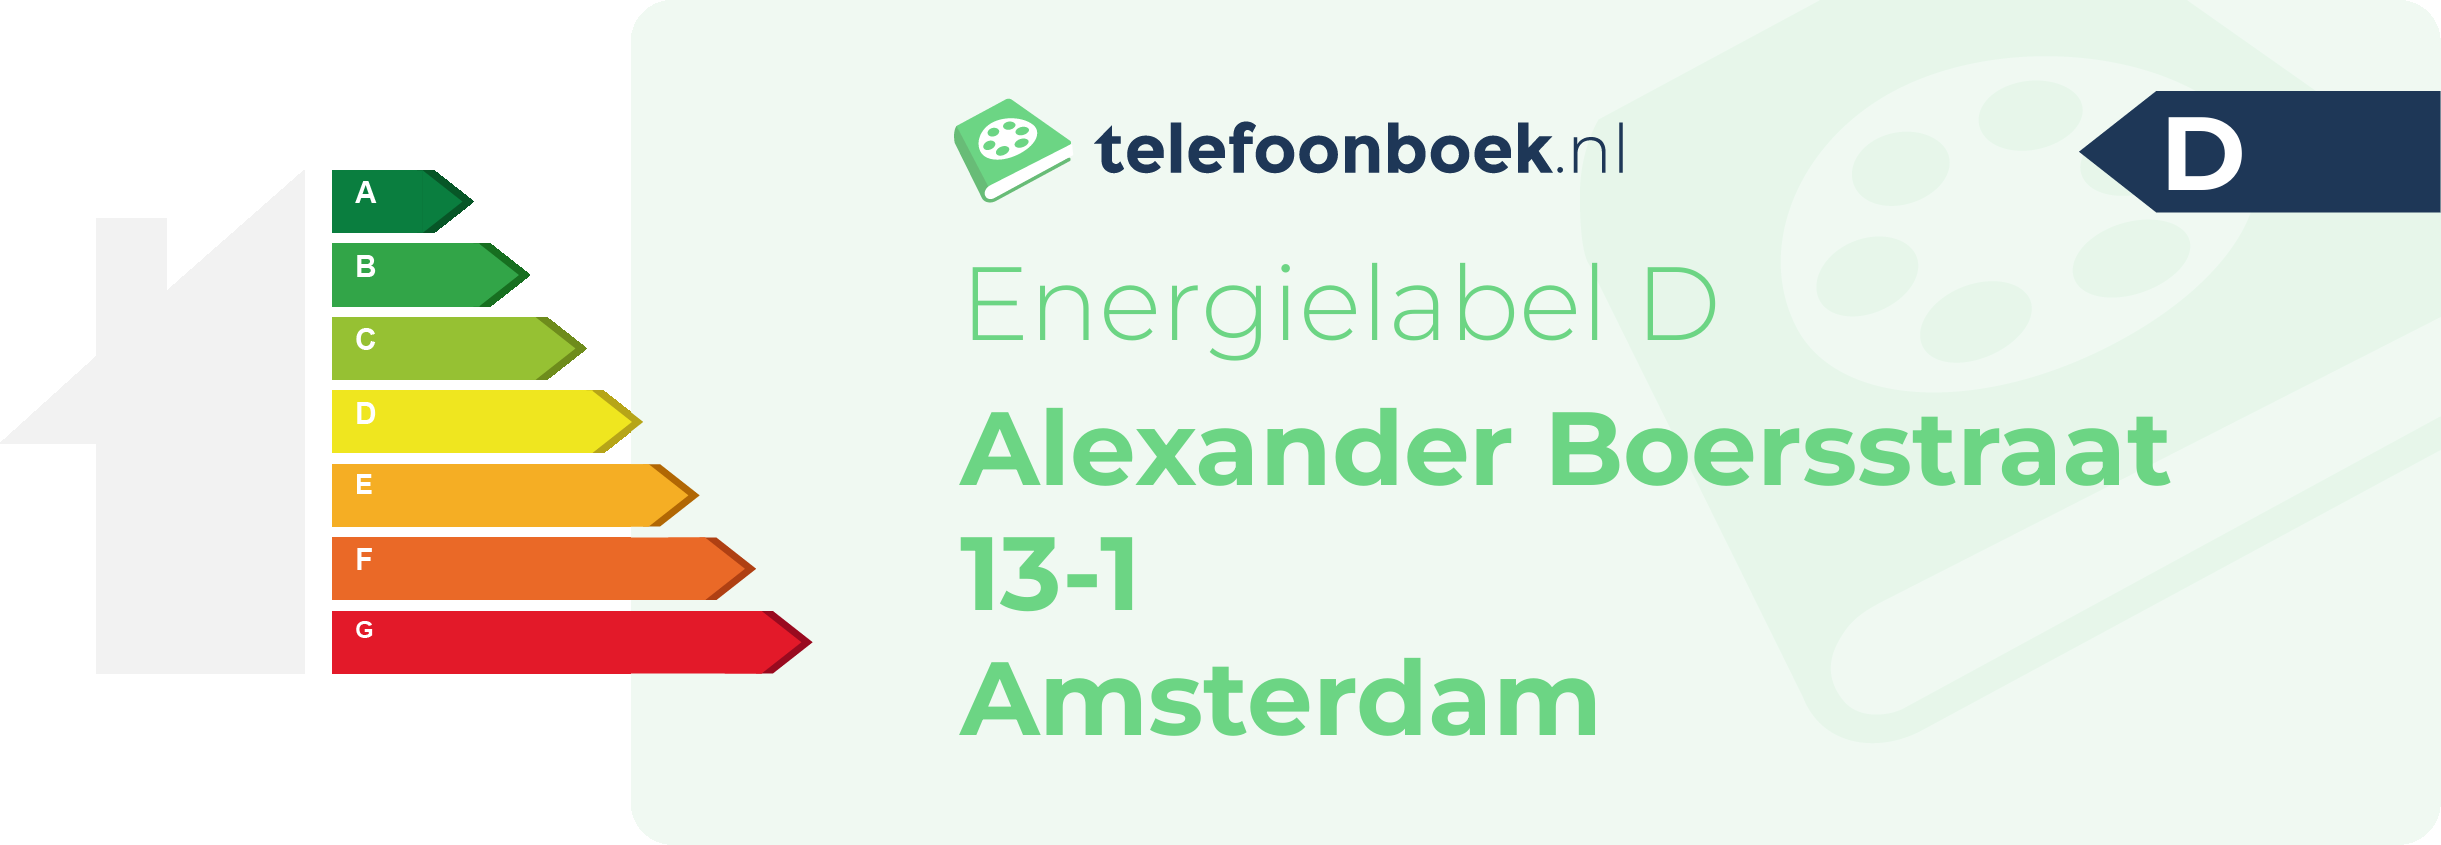 Energielabel Alexander Boersstraat 13-1 Amsterdam